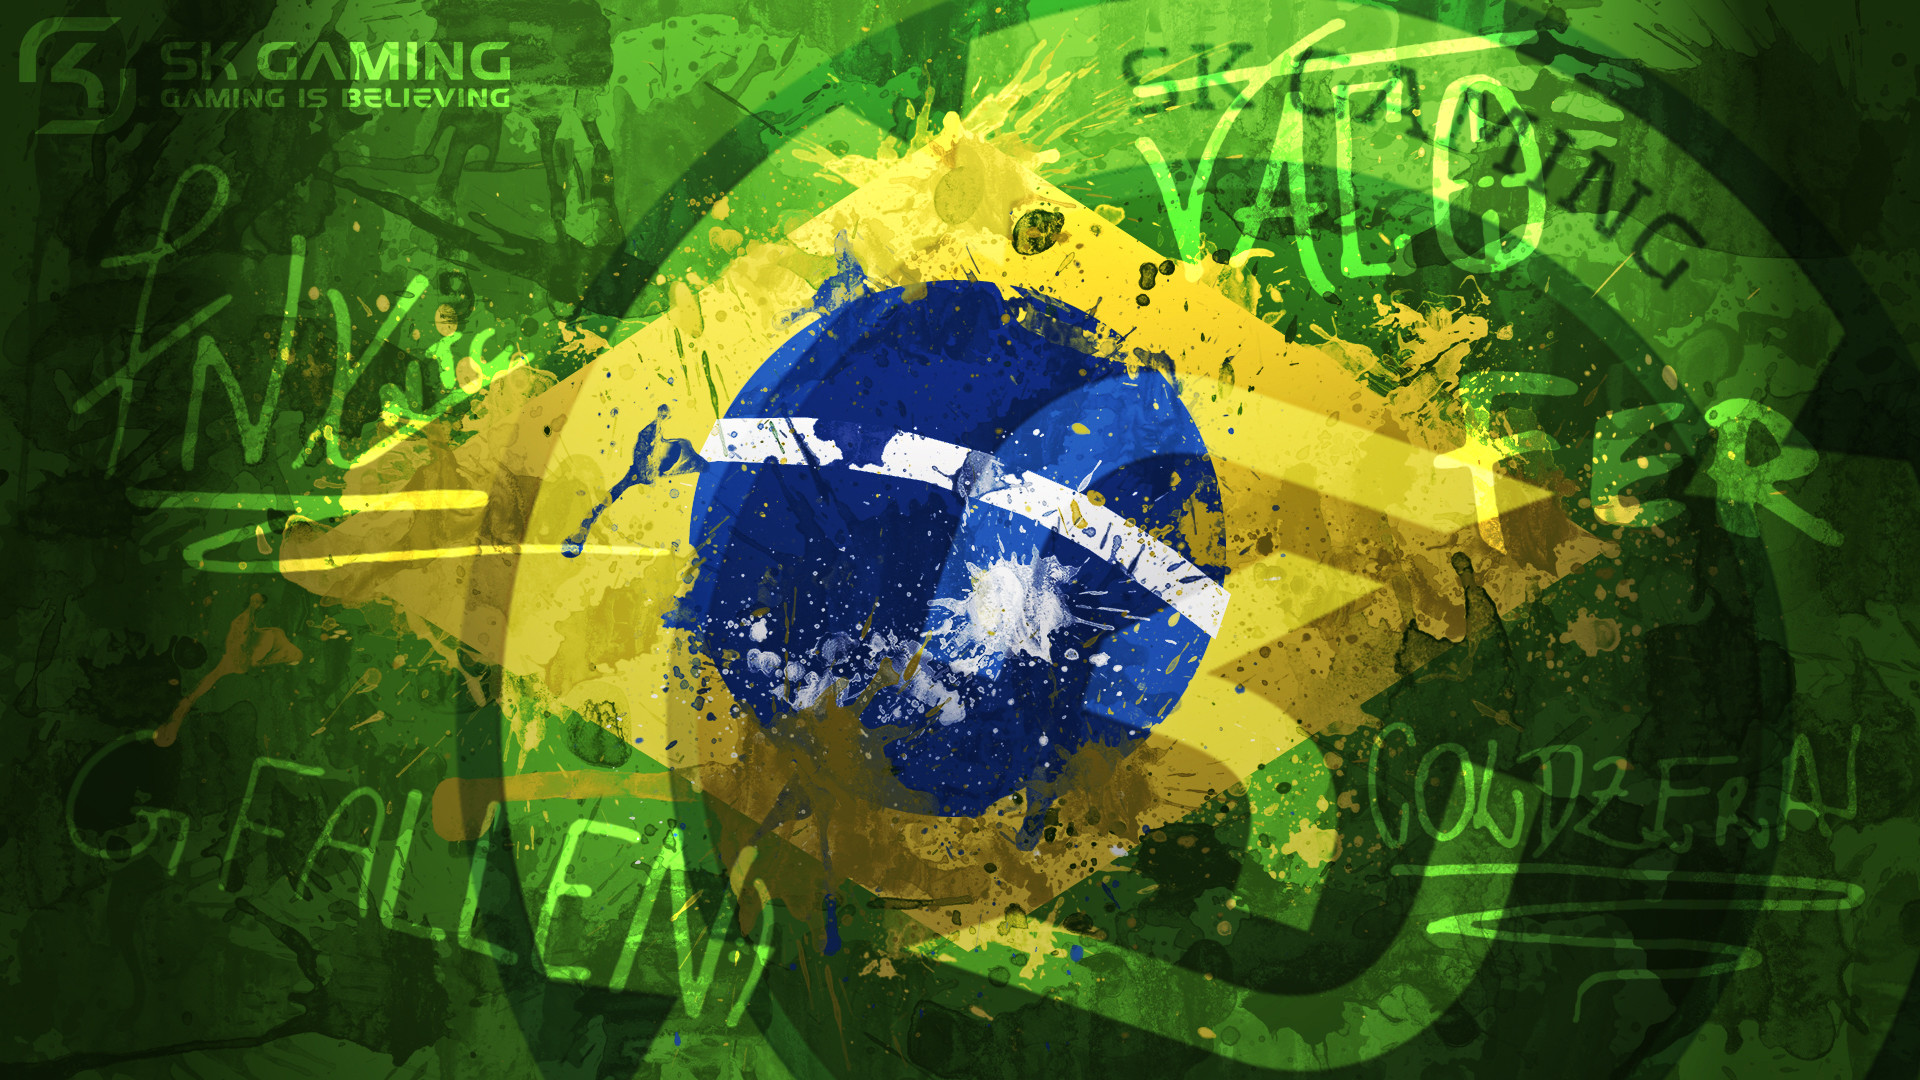 SK Gaming Brazil